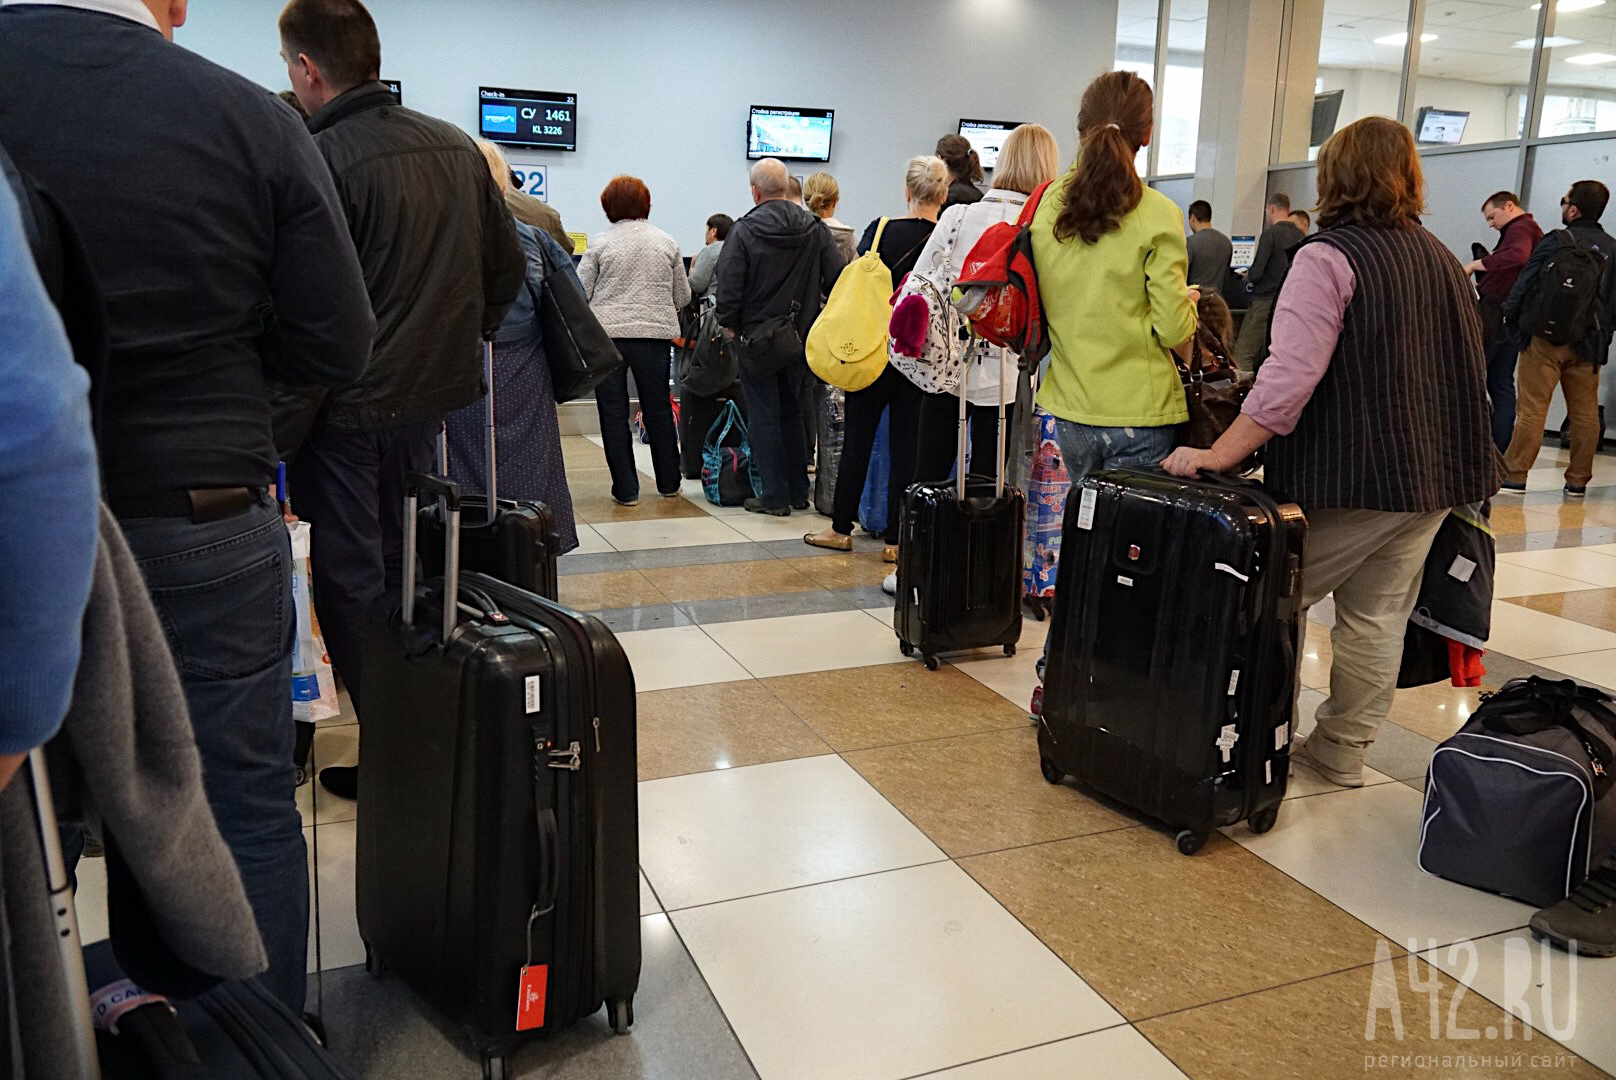 Международный аэропорт Элиста с 3 мая возобновит обслуживание пассажиров